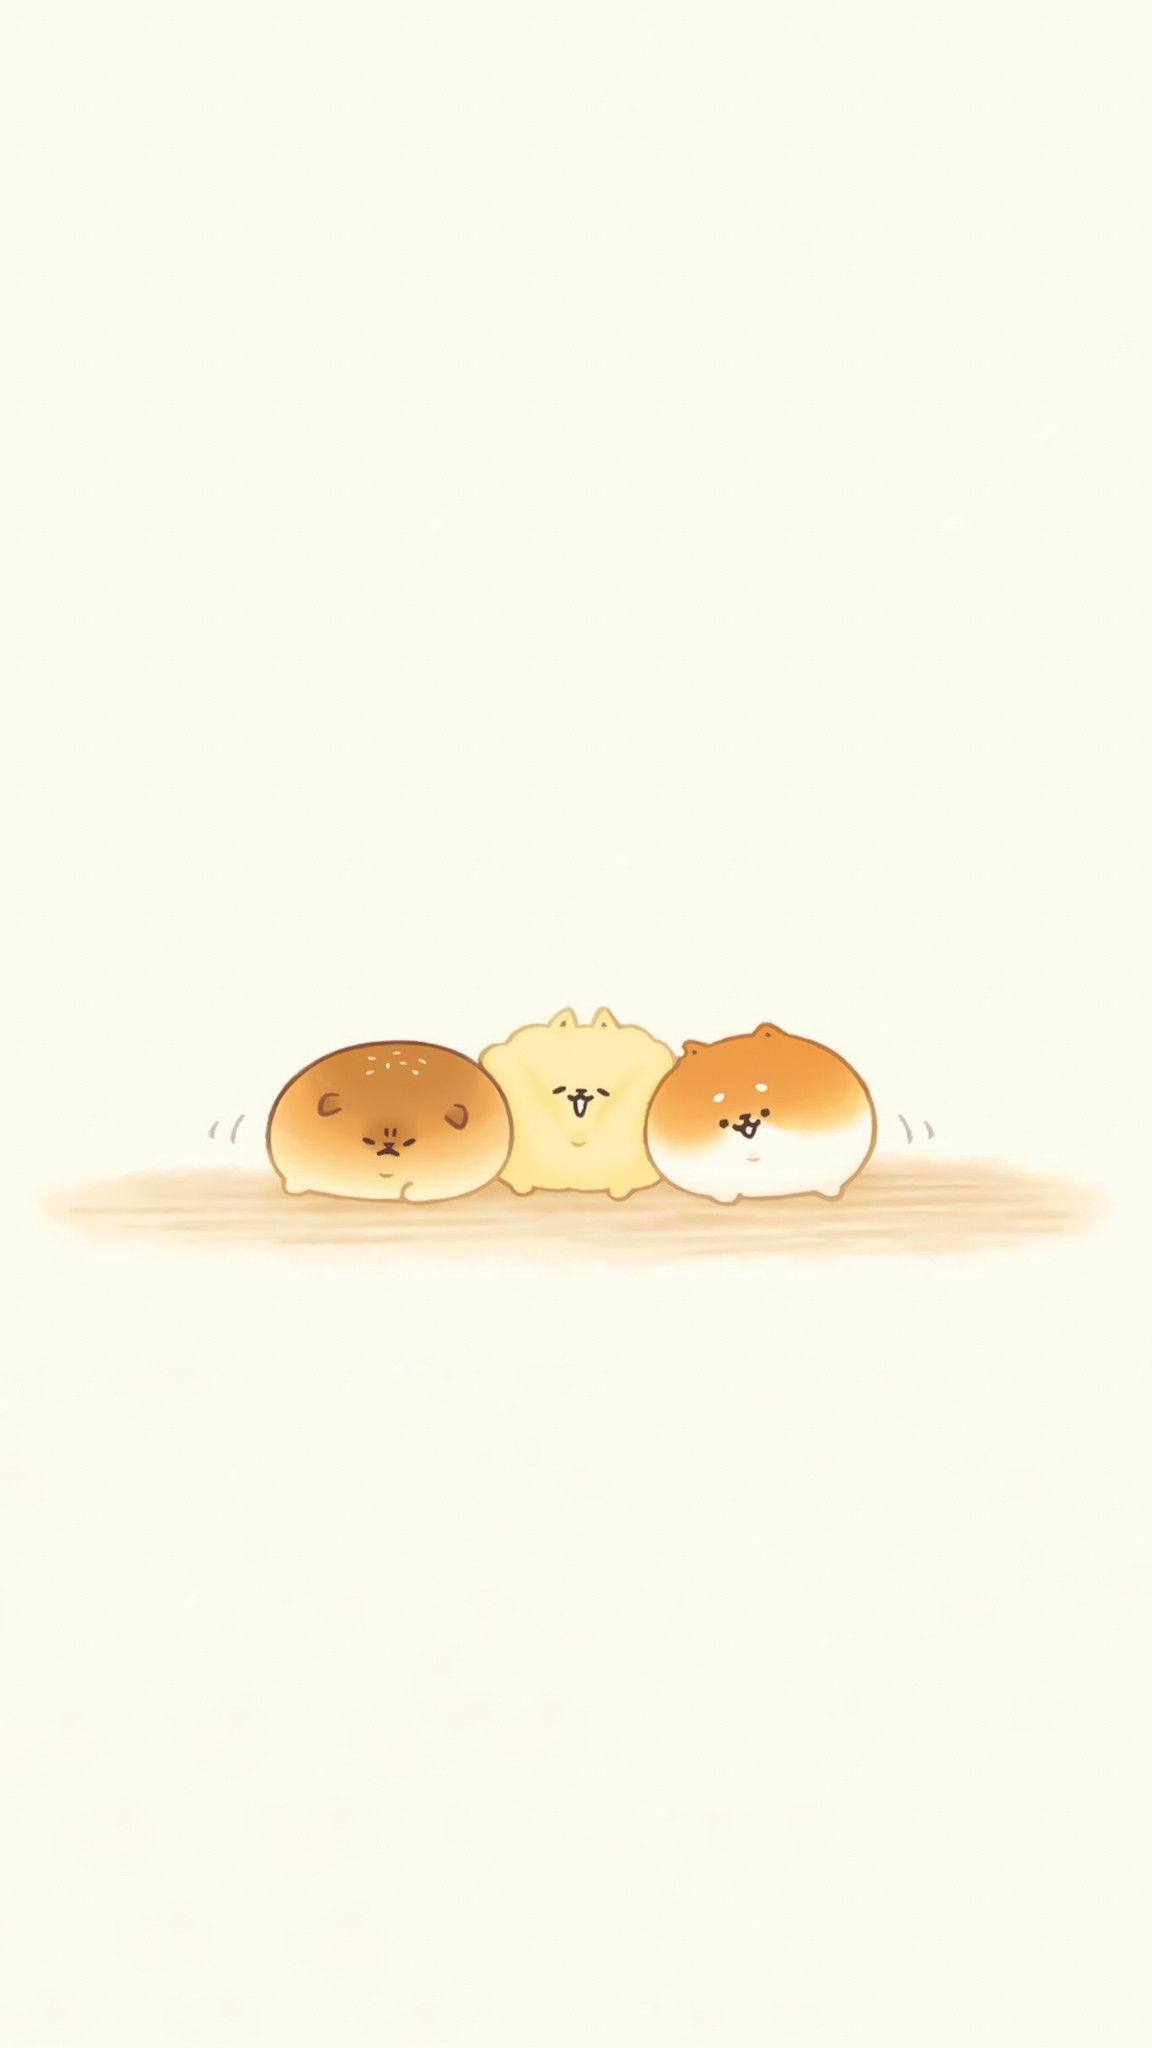 Yeastken. Cute kawaii animals, Cute food art, Cute drawings